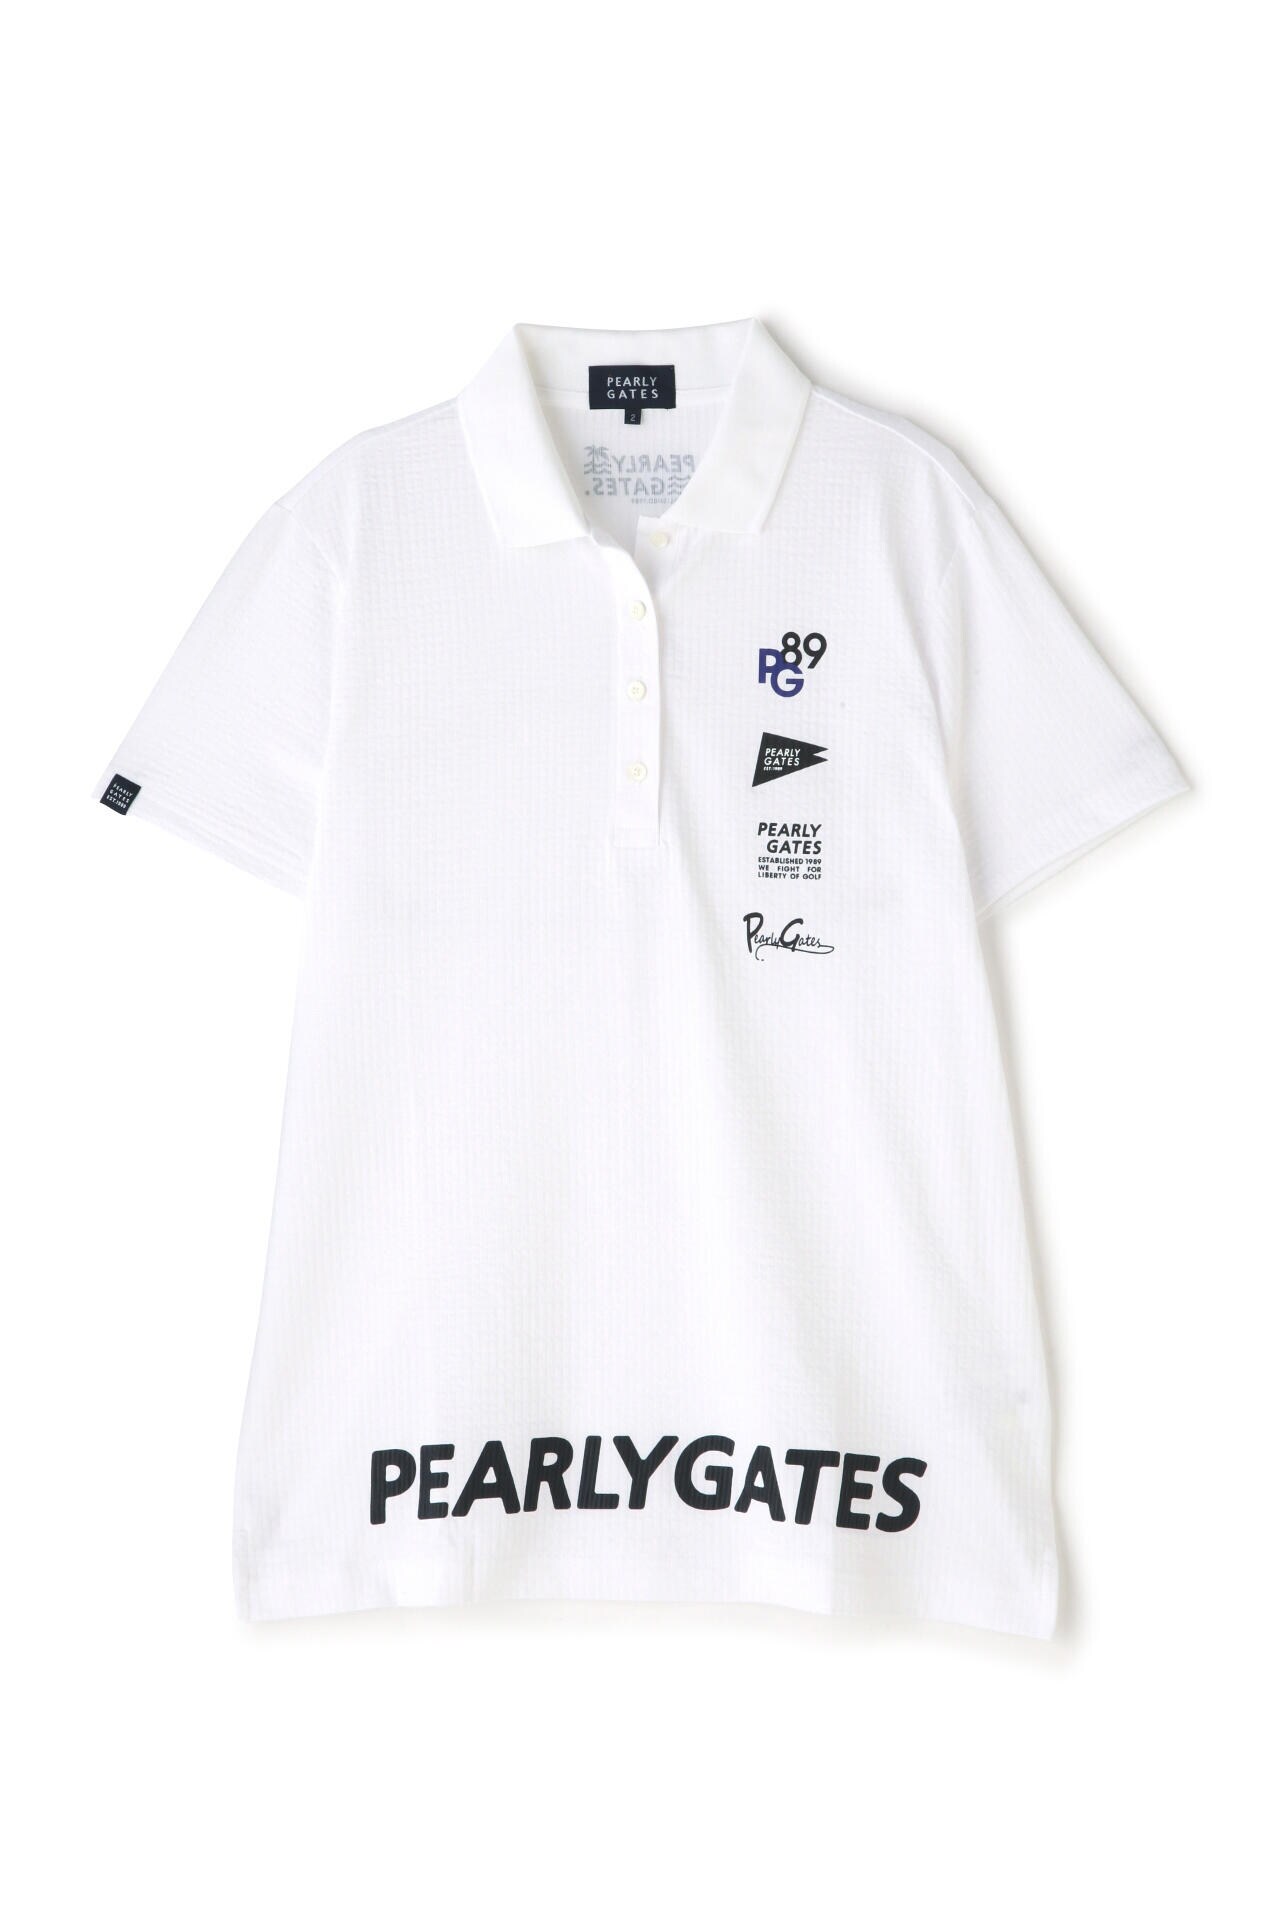 パーリーゲイツ PEARLY GATES ポロシャツ ストライプ サイズ2 - ウエア